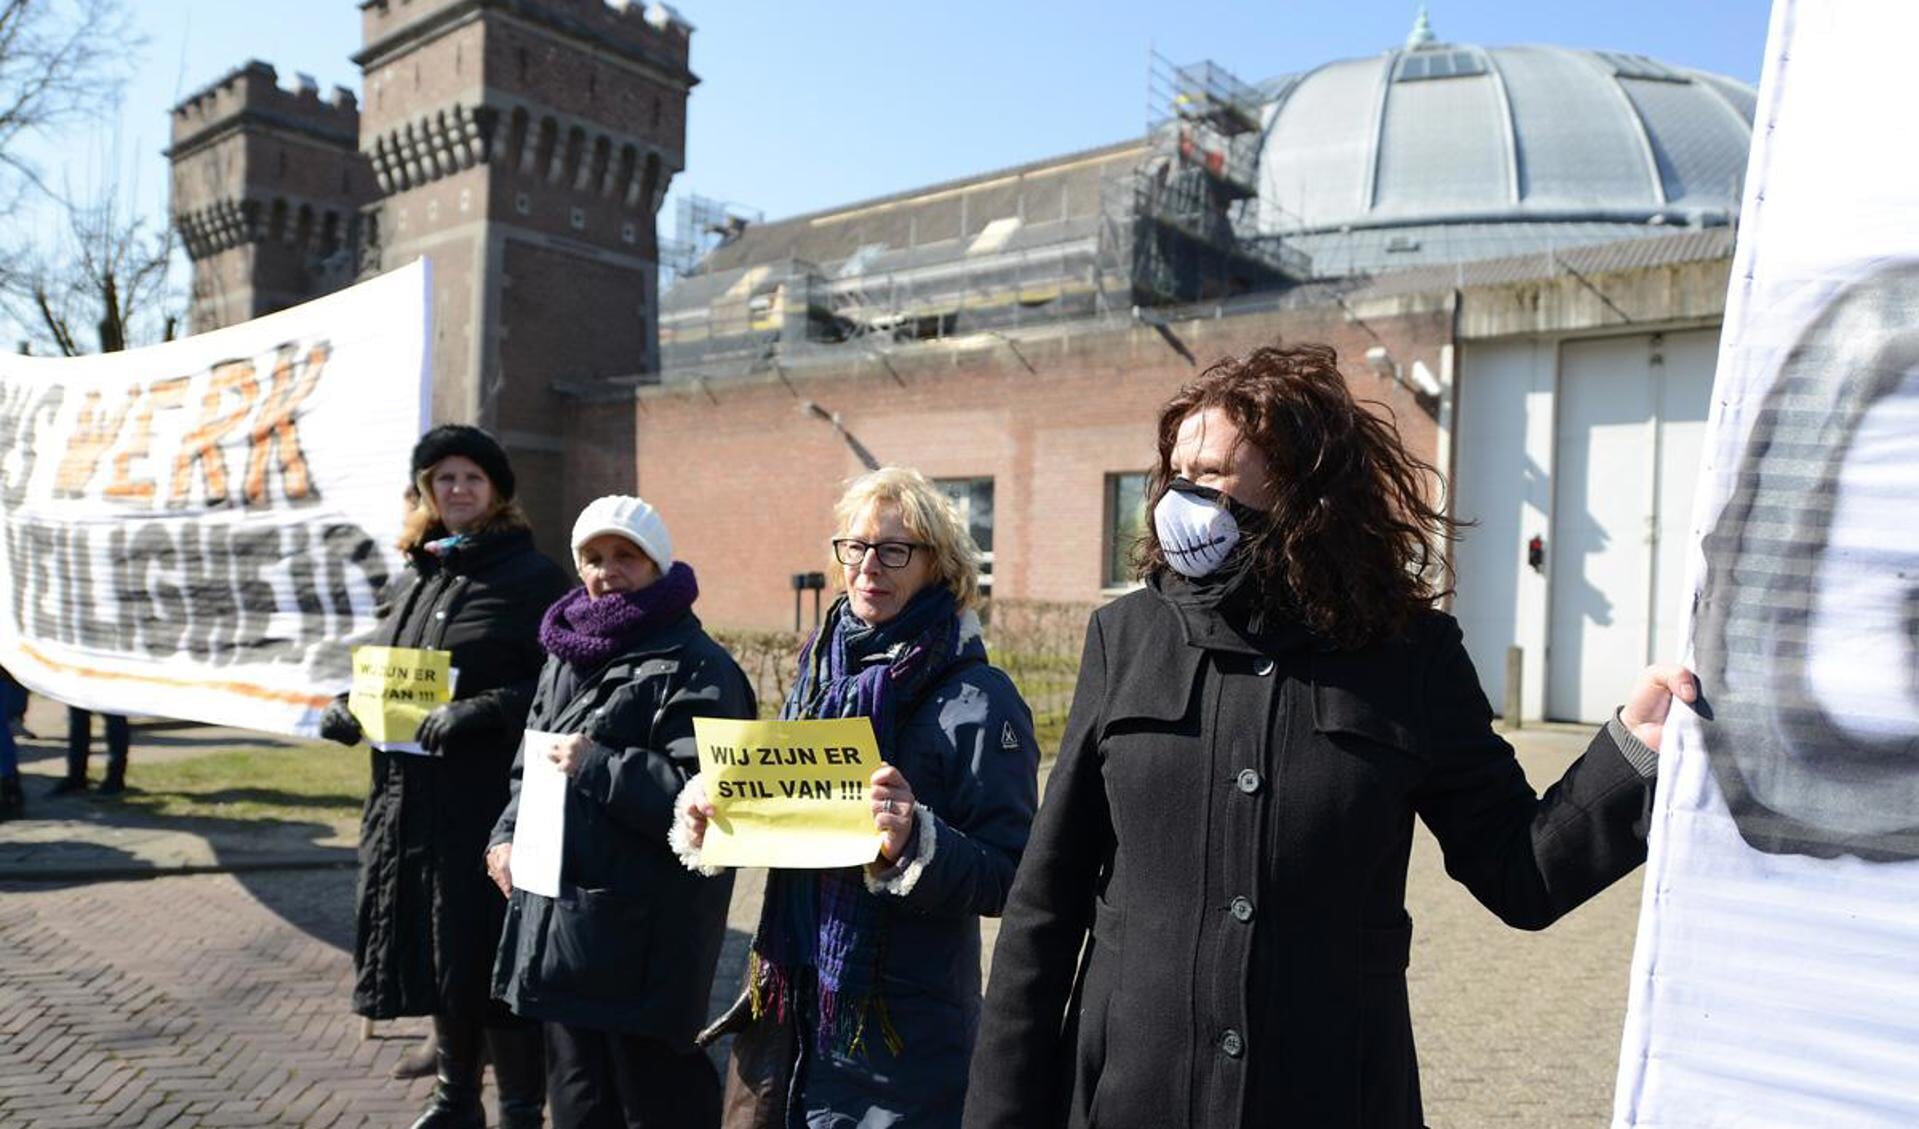 Actie voeren tegen De Koepel. foto Hinke Rutten